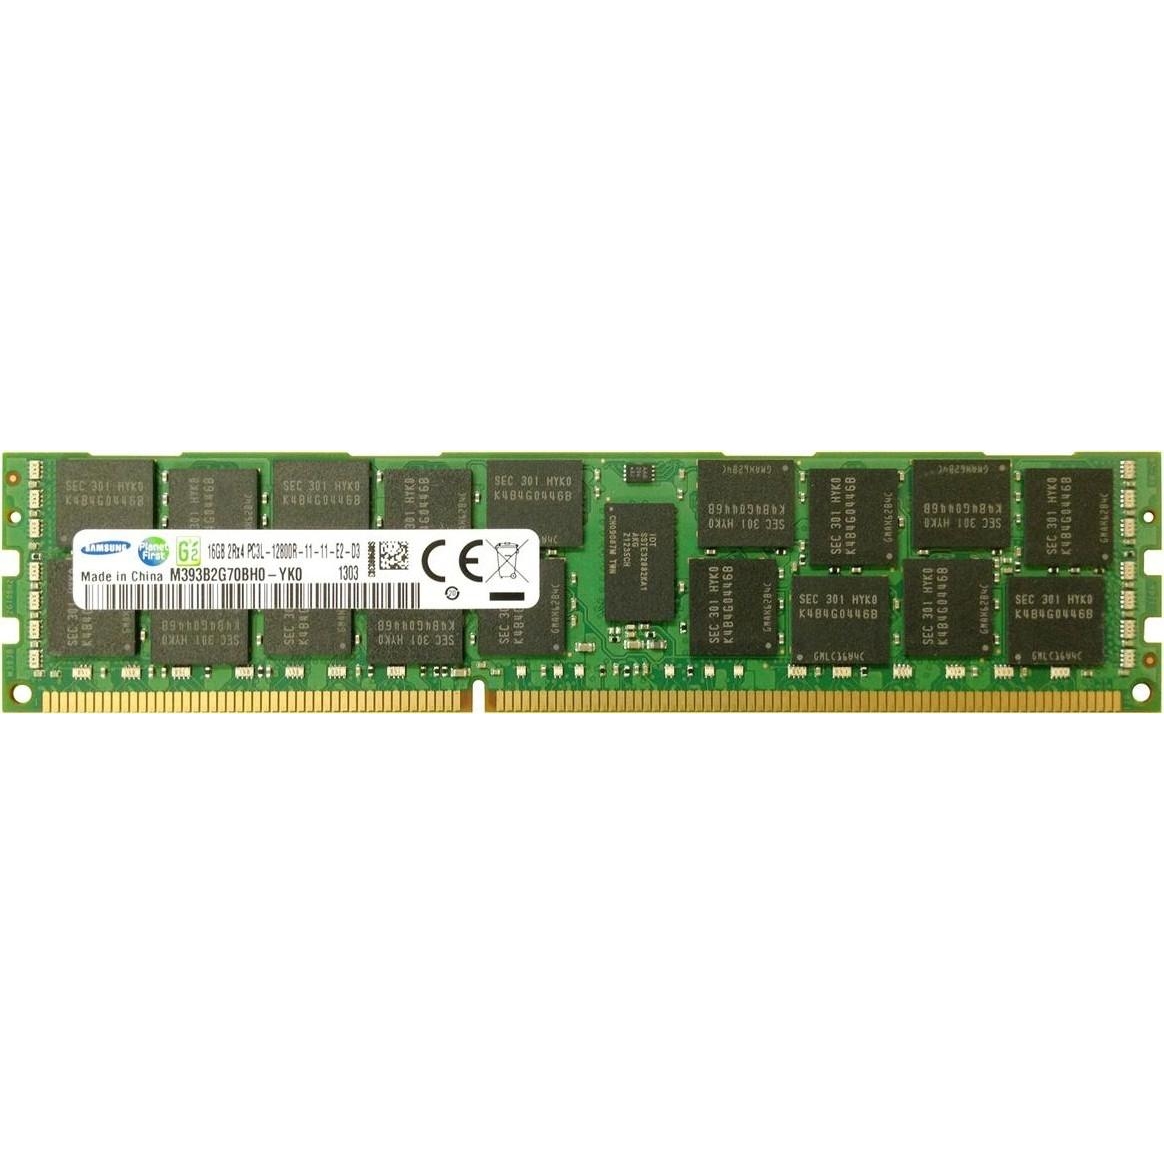 Samsung 16 GB DDR3L 1600 MHz (M393B2G70BH0-YK0) - зображення 1